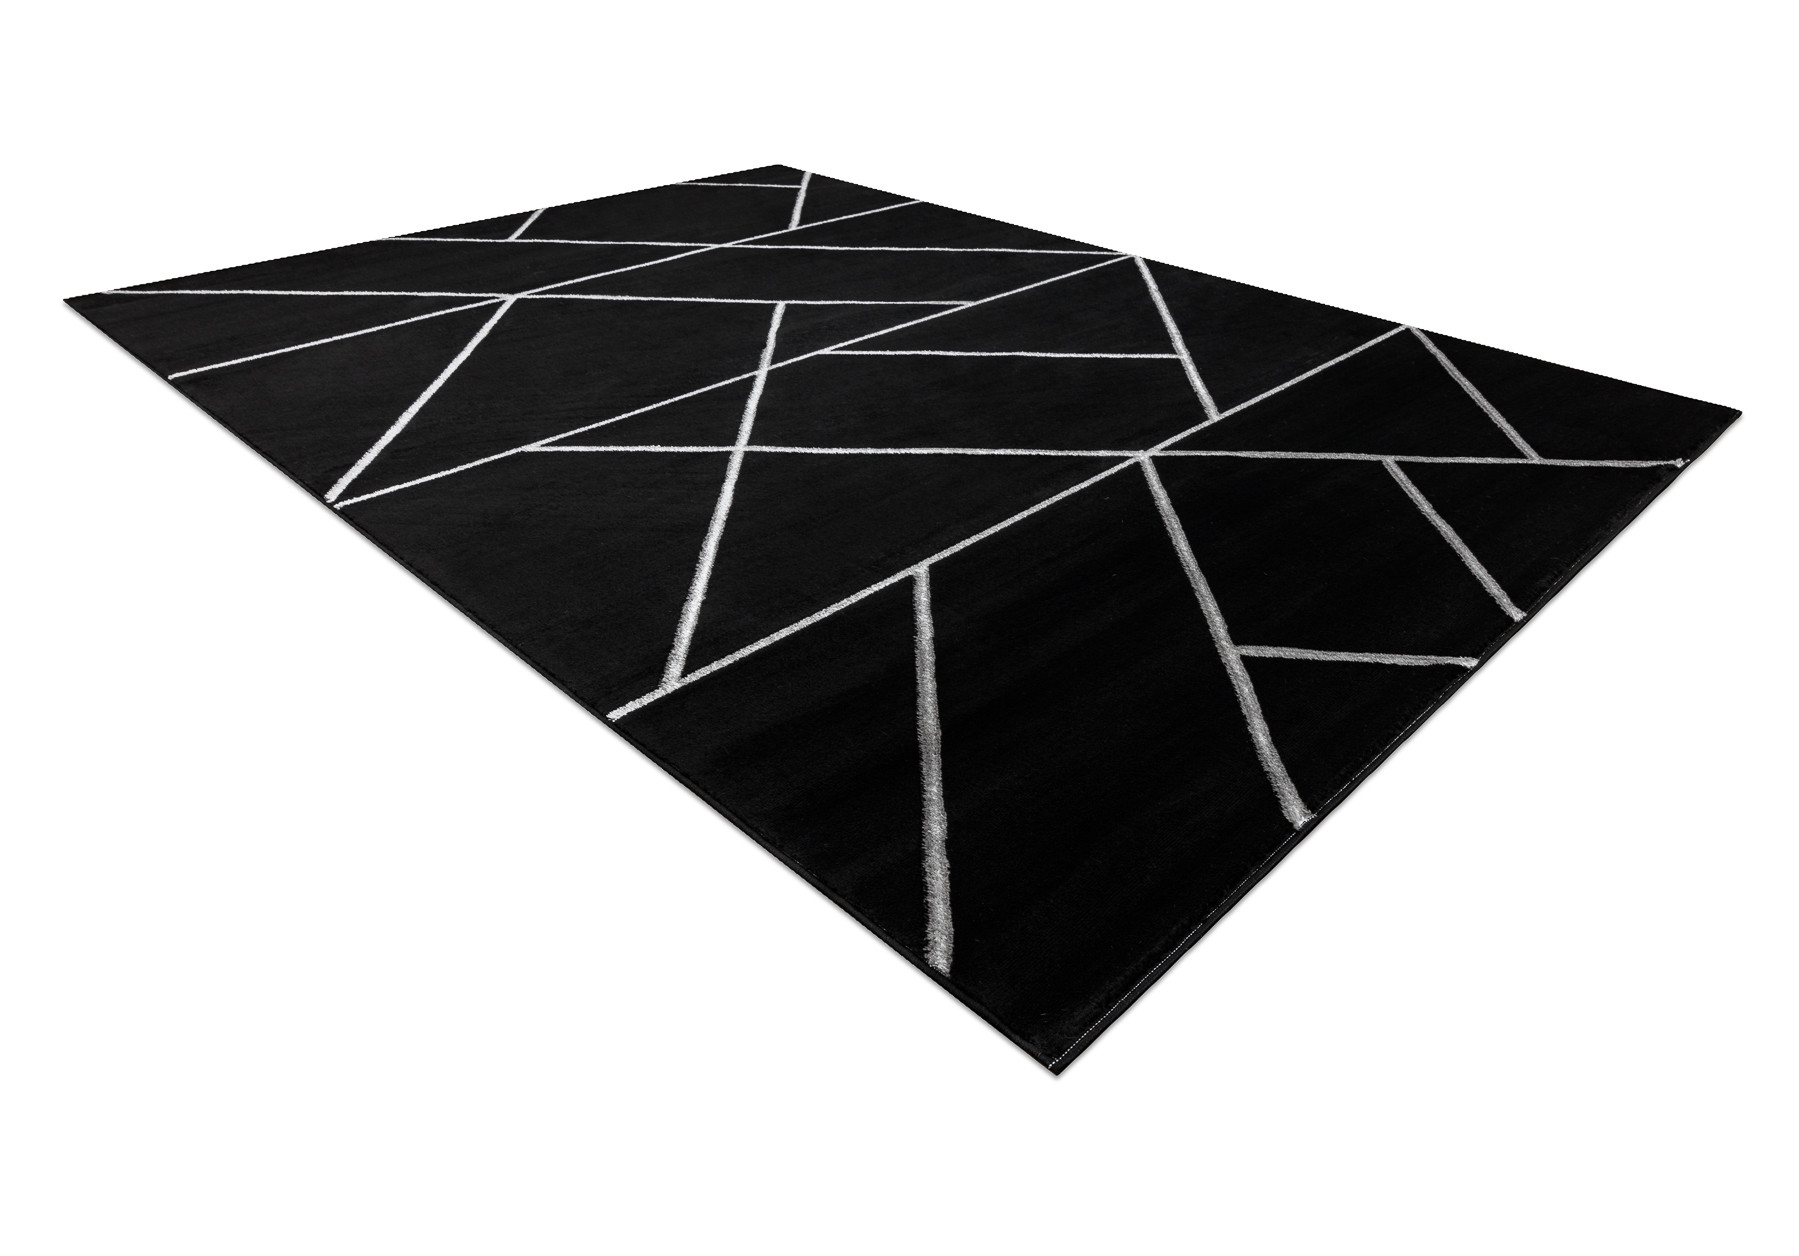 Koberec EMERALD exkluzívny 7543 glamour, styl geometrický čierny / strieborný